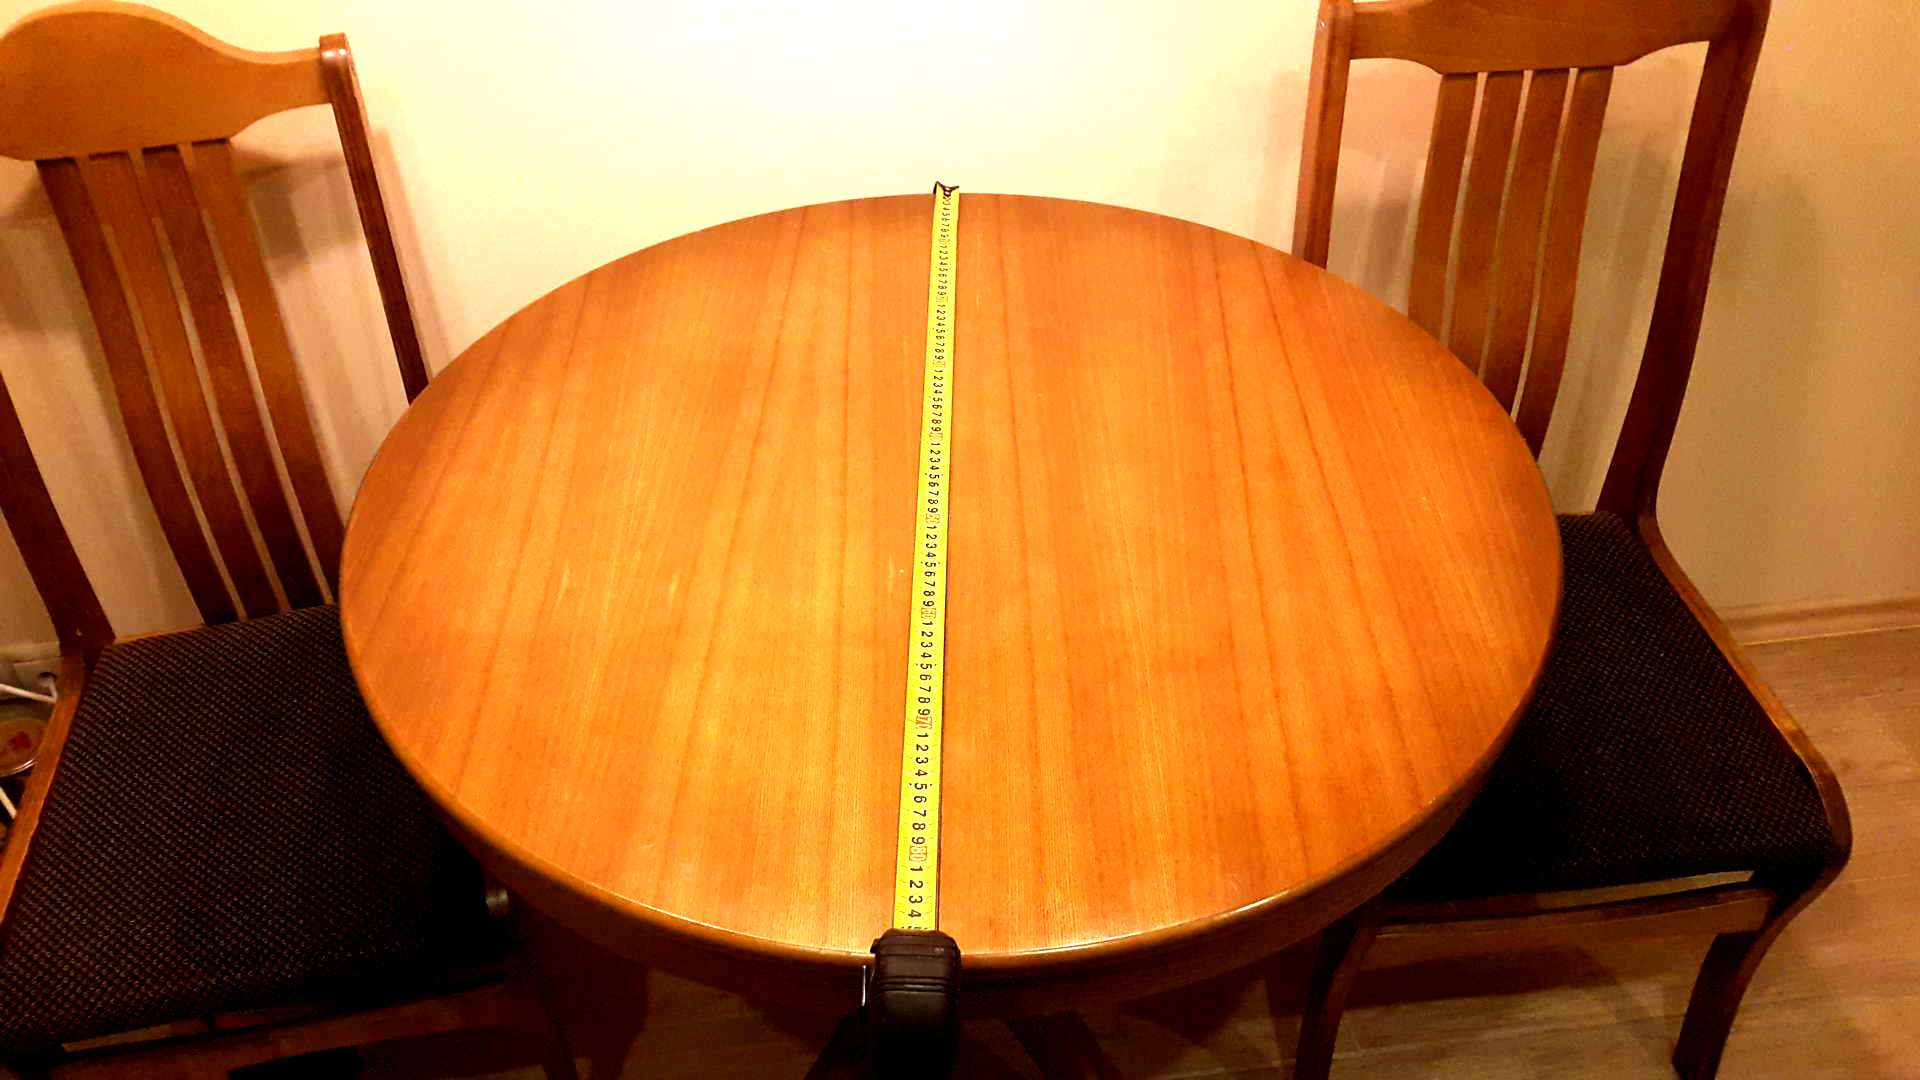 круглый стол на кухню размеры со стульями